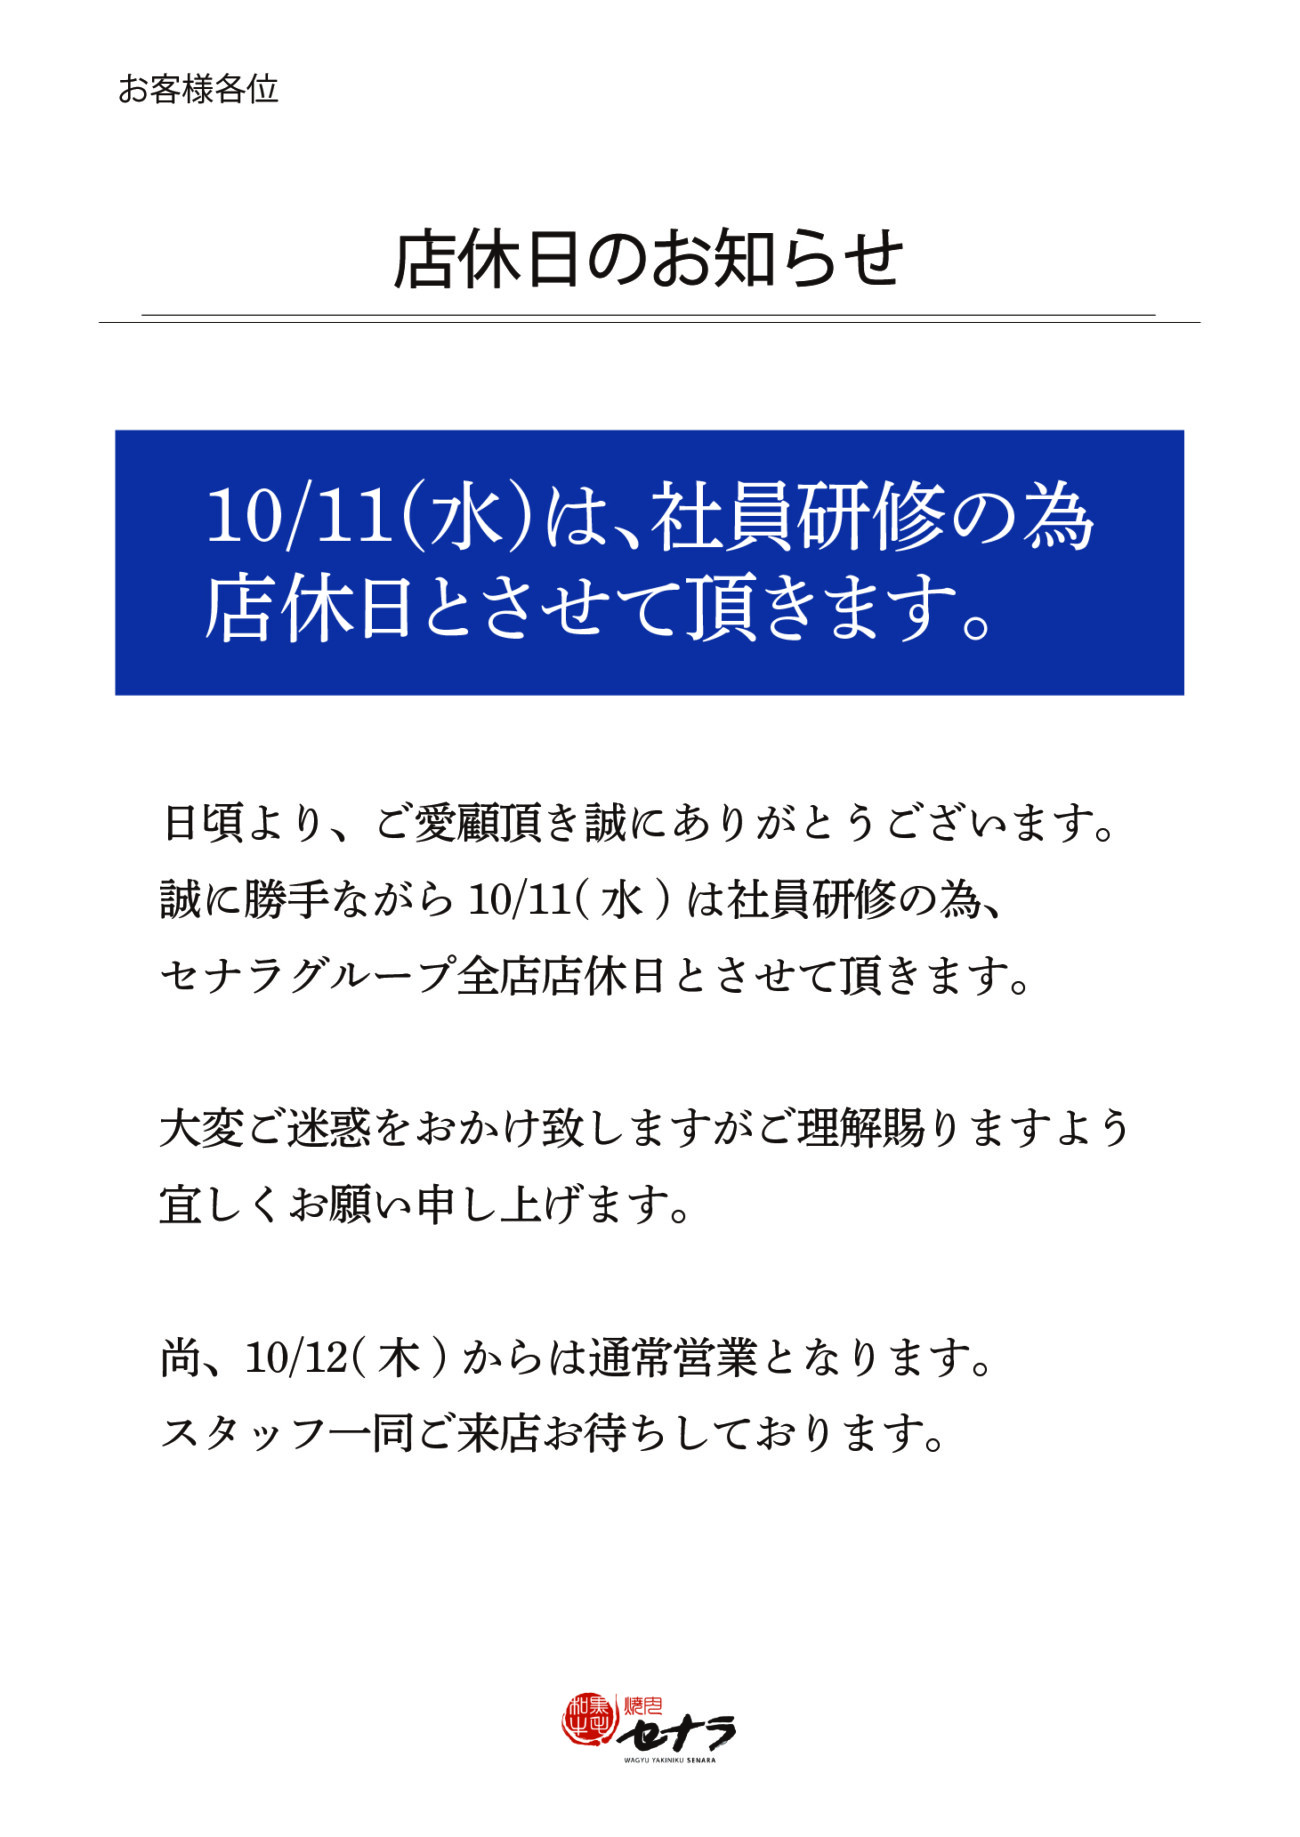 10/11(水)店休のお知らせ